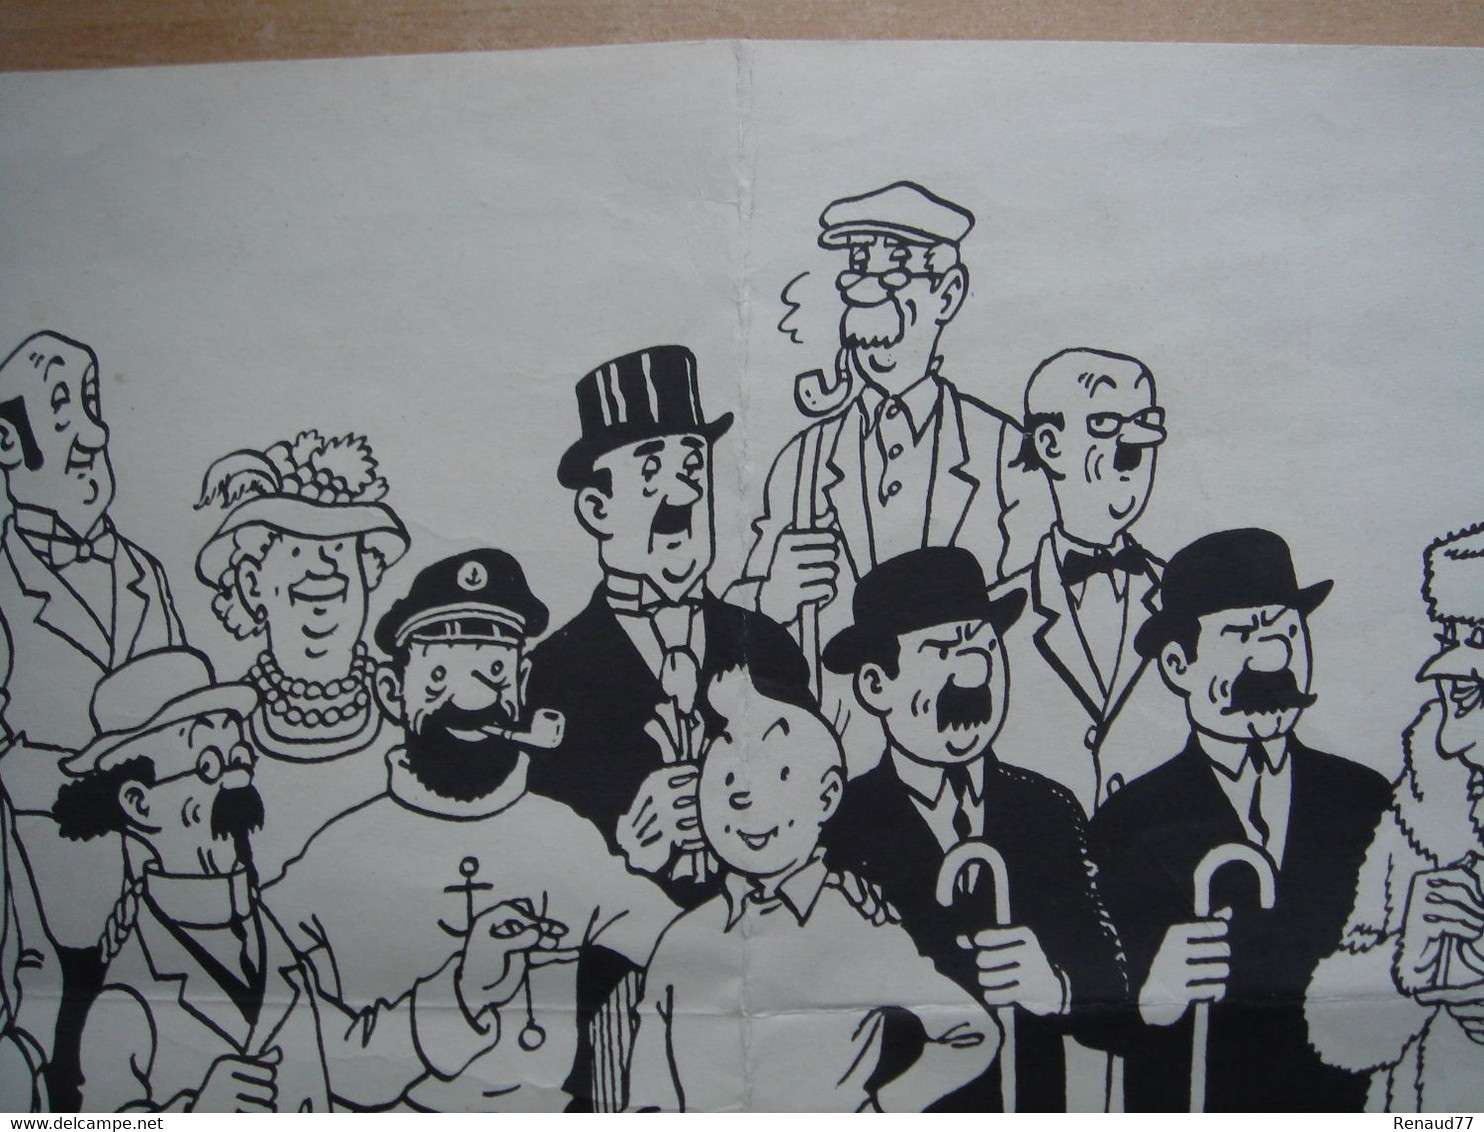 Affiche - Tintin & Milou, Capitaine Haddock, Dupond et Dupont ect --- Hergé - Casterman Tournai - 55cm sur 38cm (RARE)